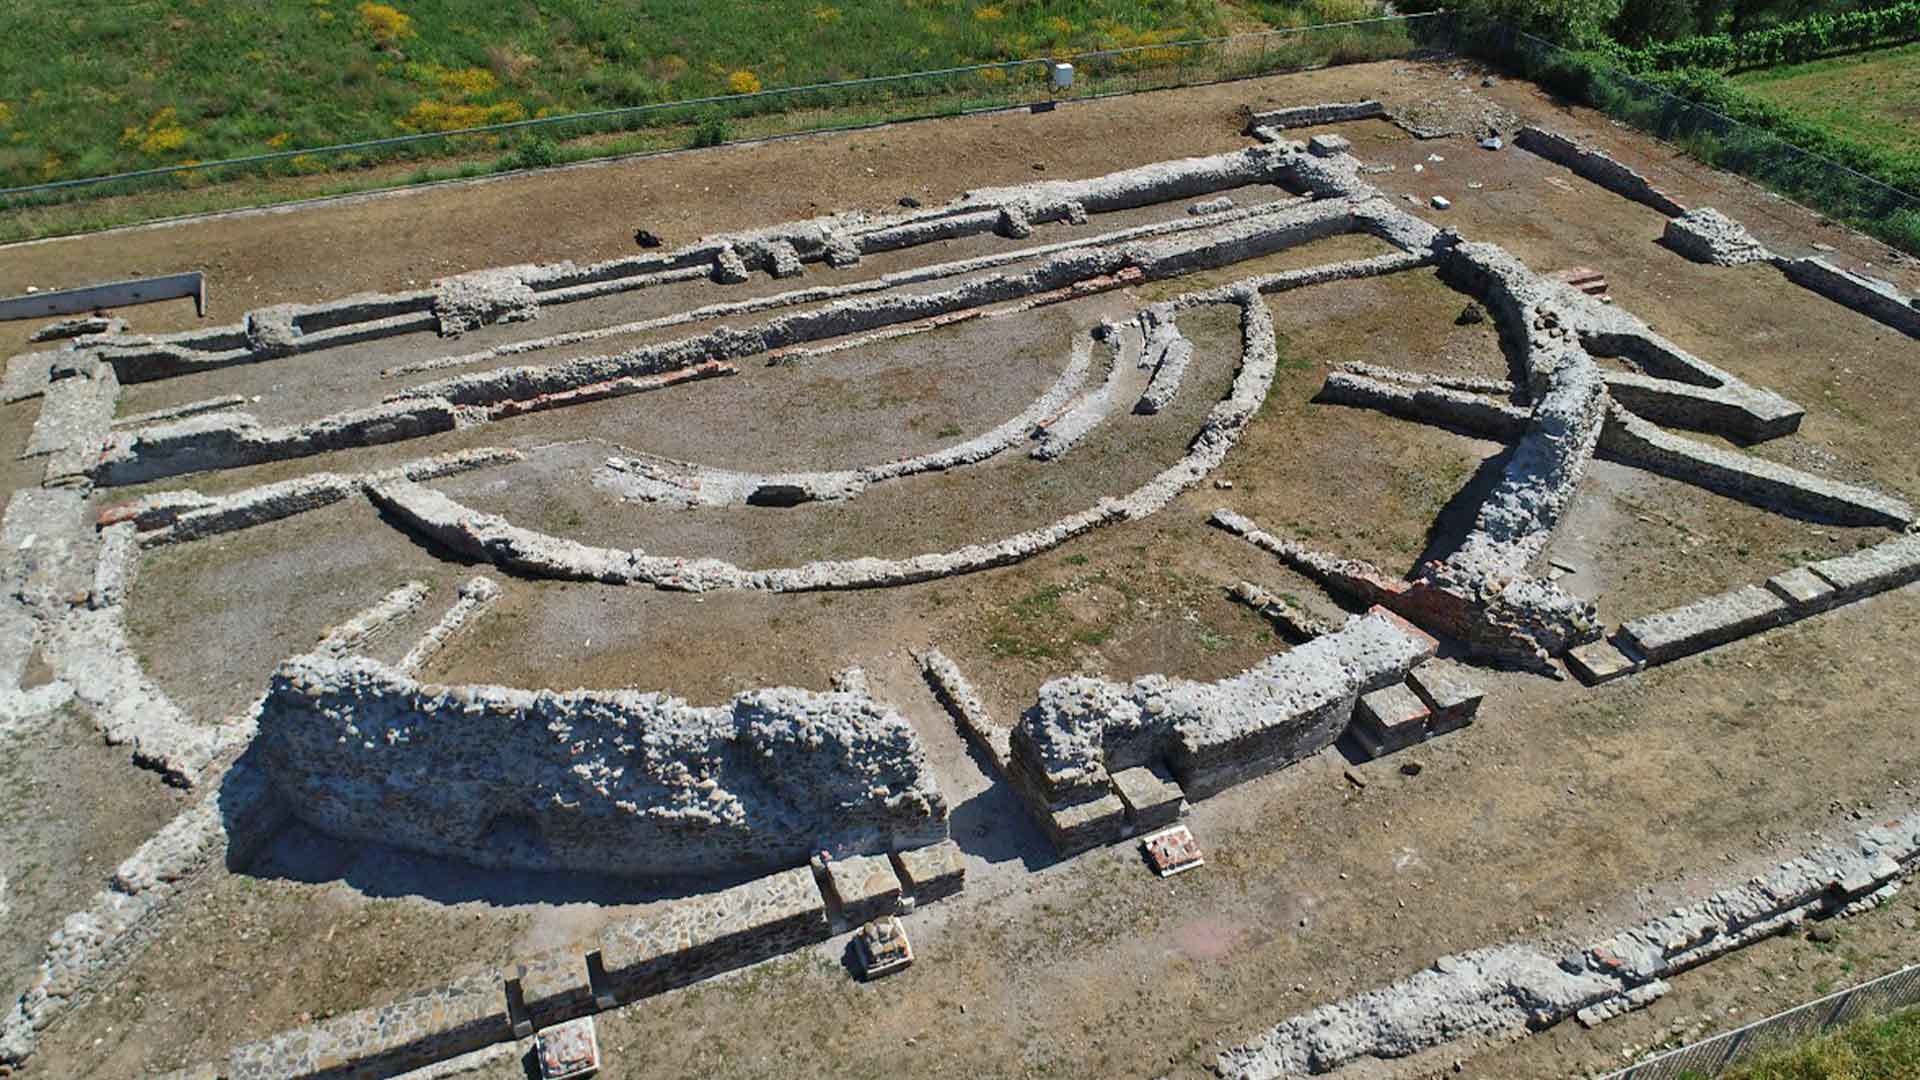  Vista aerea del teatro coperto dell’area archeologica di Luni 